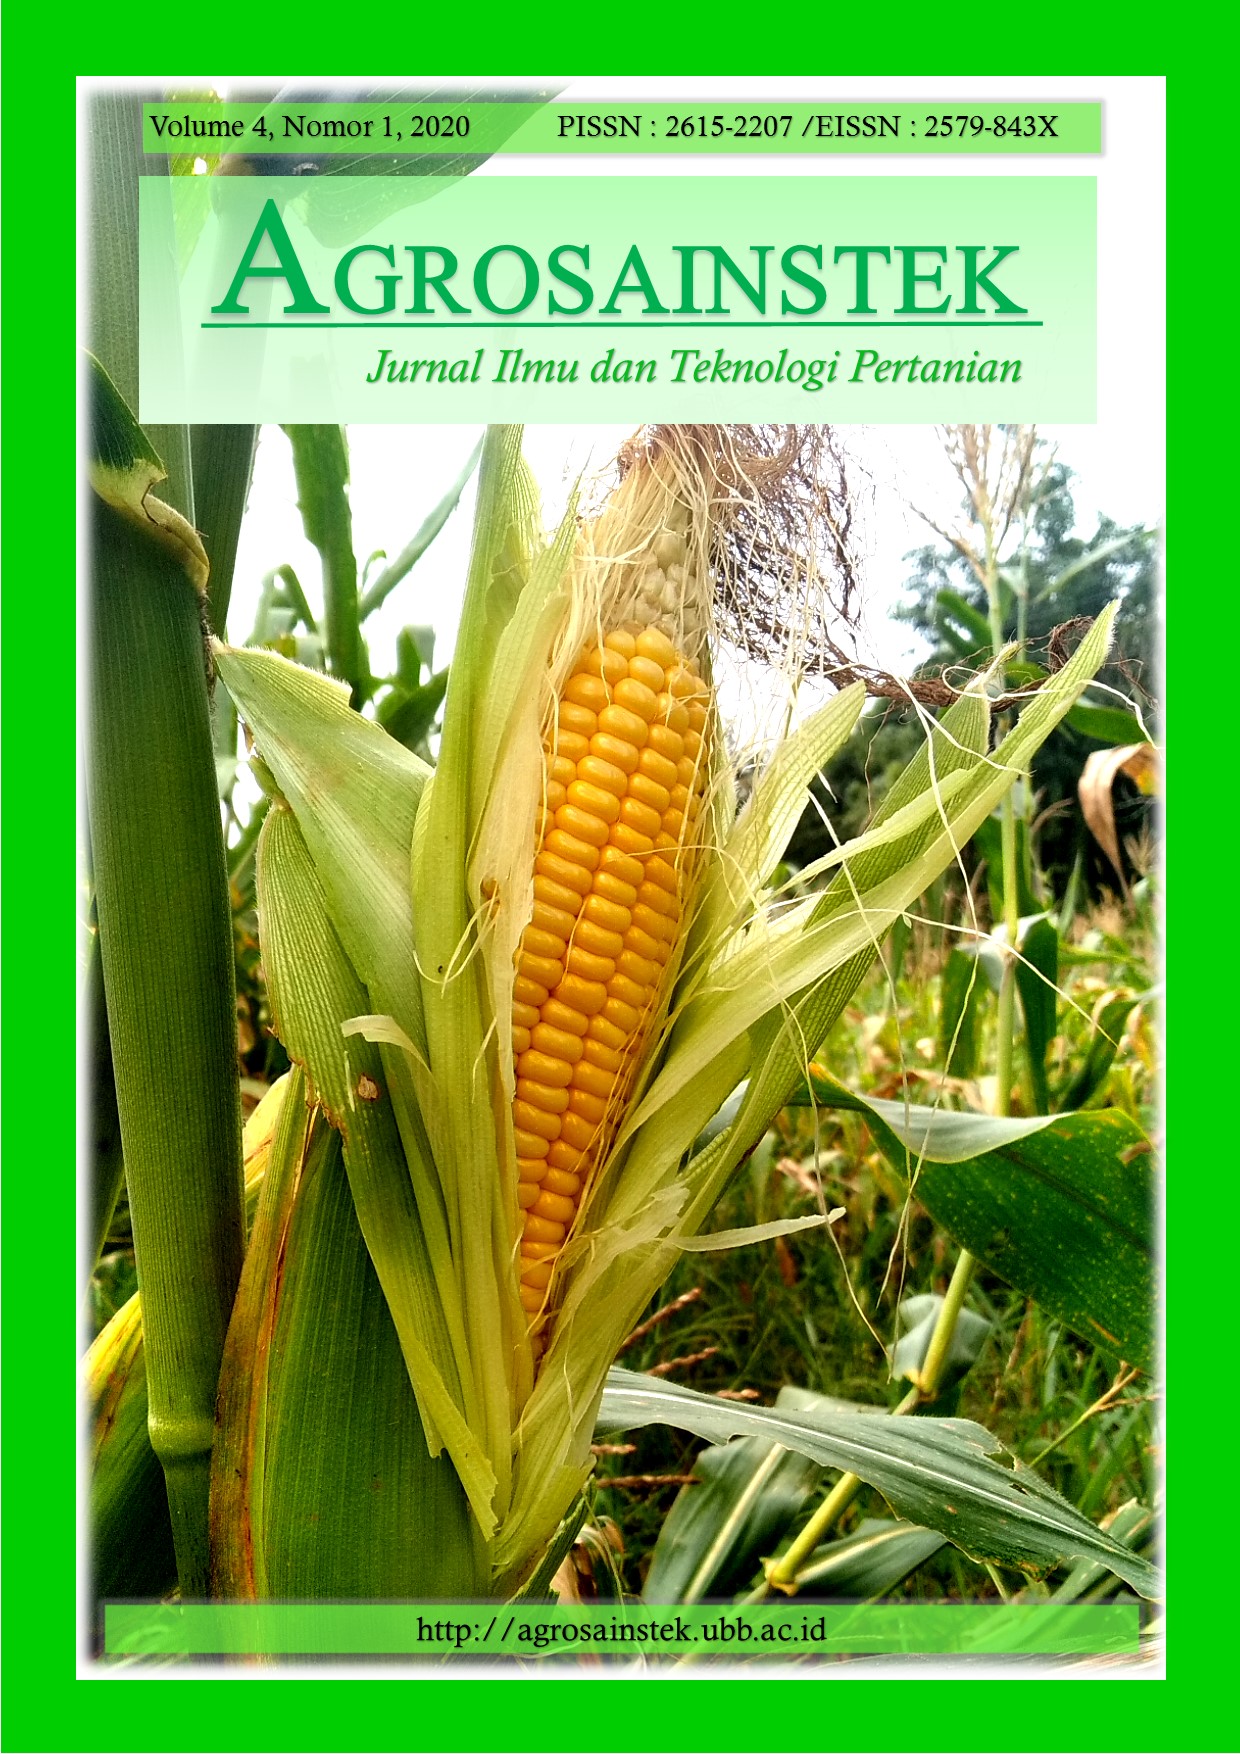 					View Vol. 4 No. 1 (2020): AGROSAINSTEK: Jurnal Ilmu dan Teknologi Pertanian
				